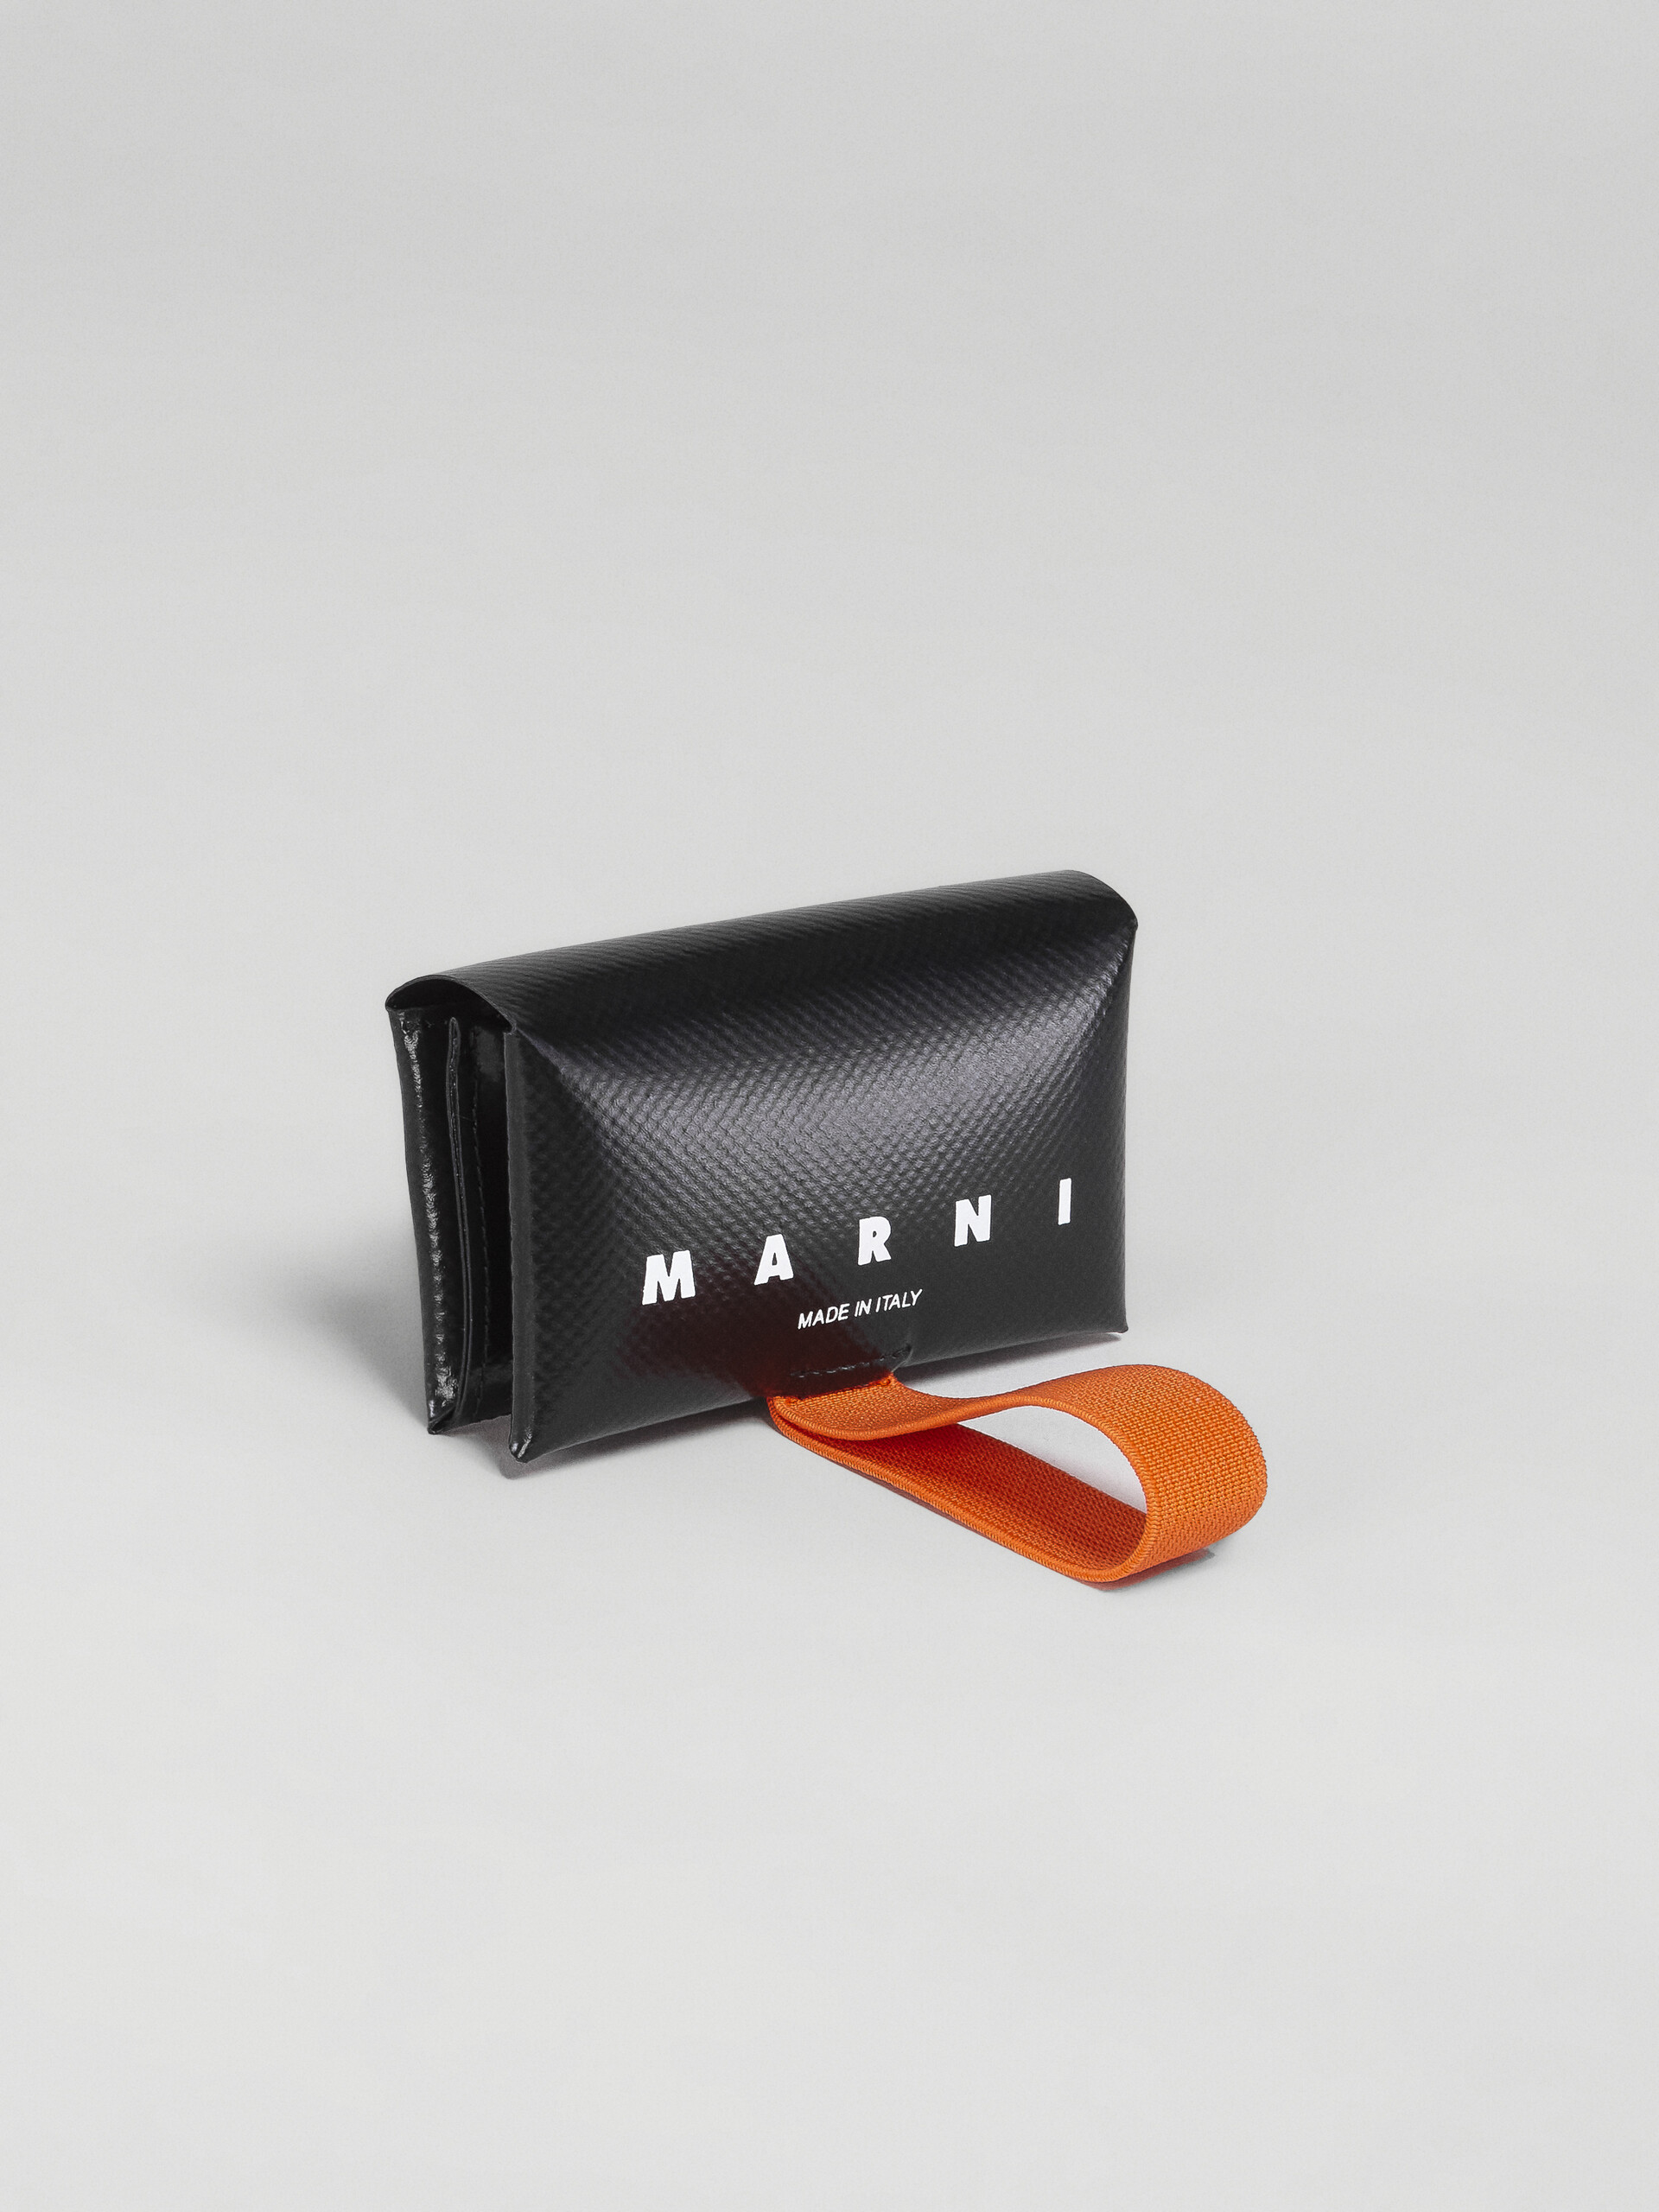 Portafoglio tri-fold in PVC nero e arancio - Portafogli - Image 4